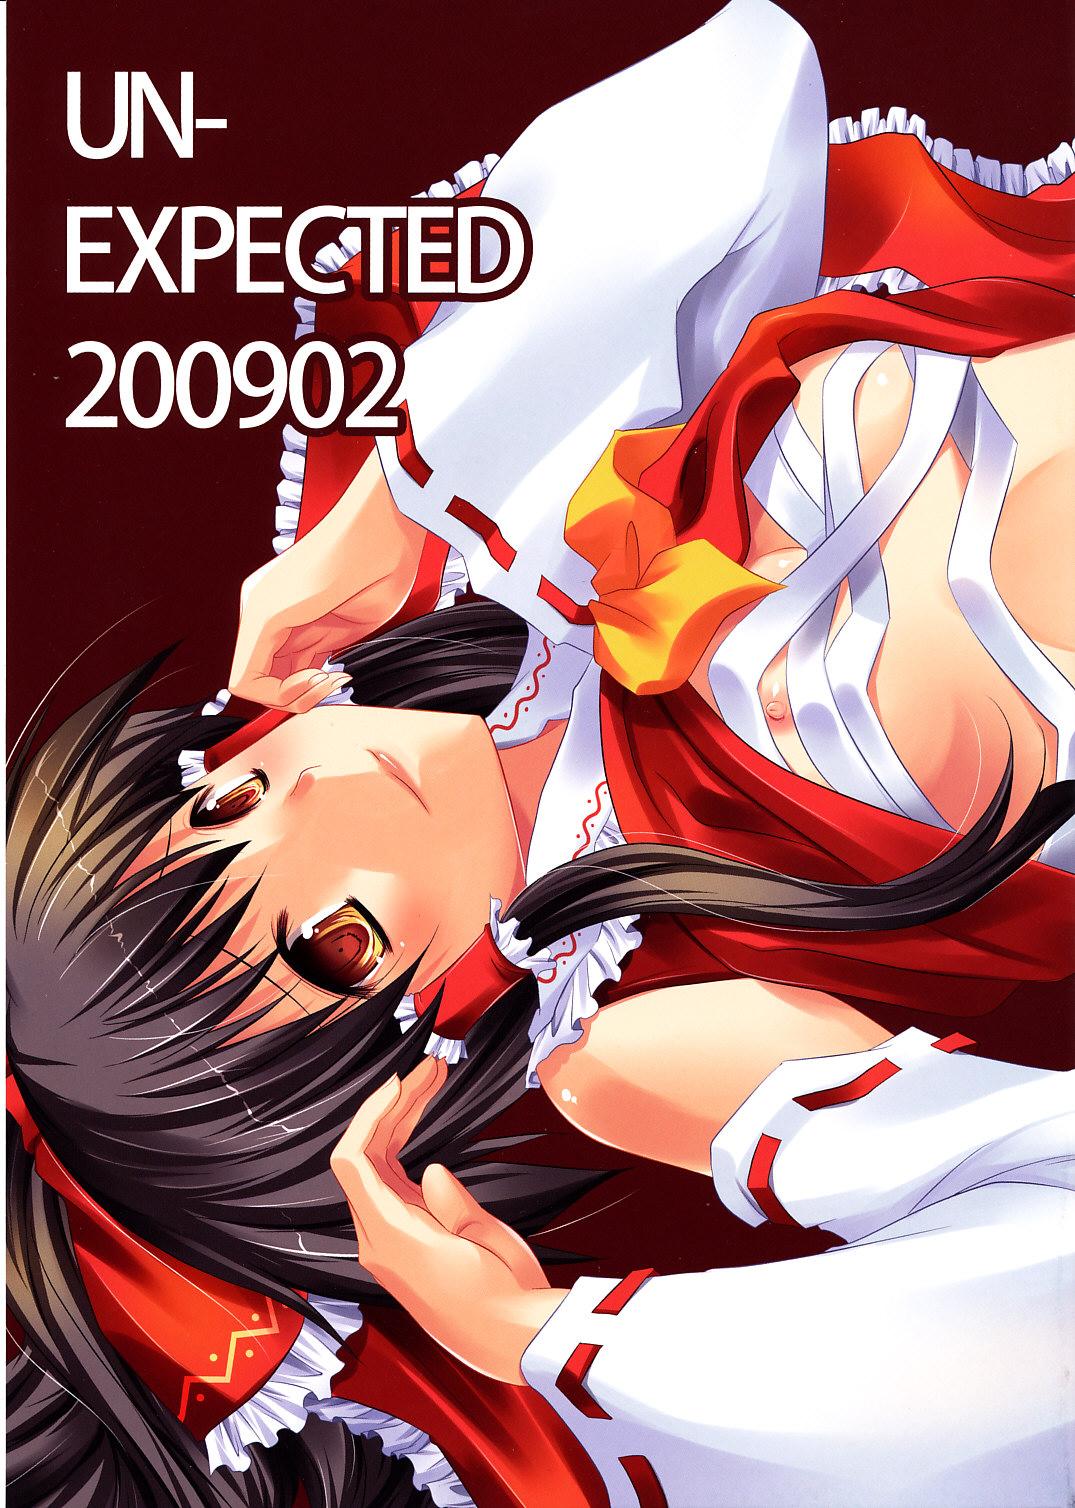 UN-EXPECTED 200902 0